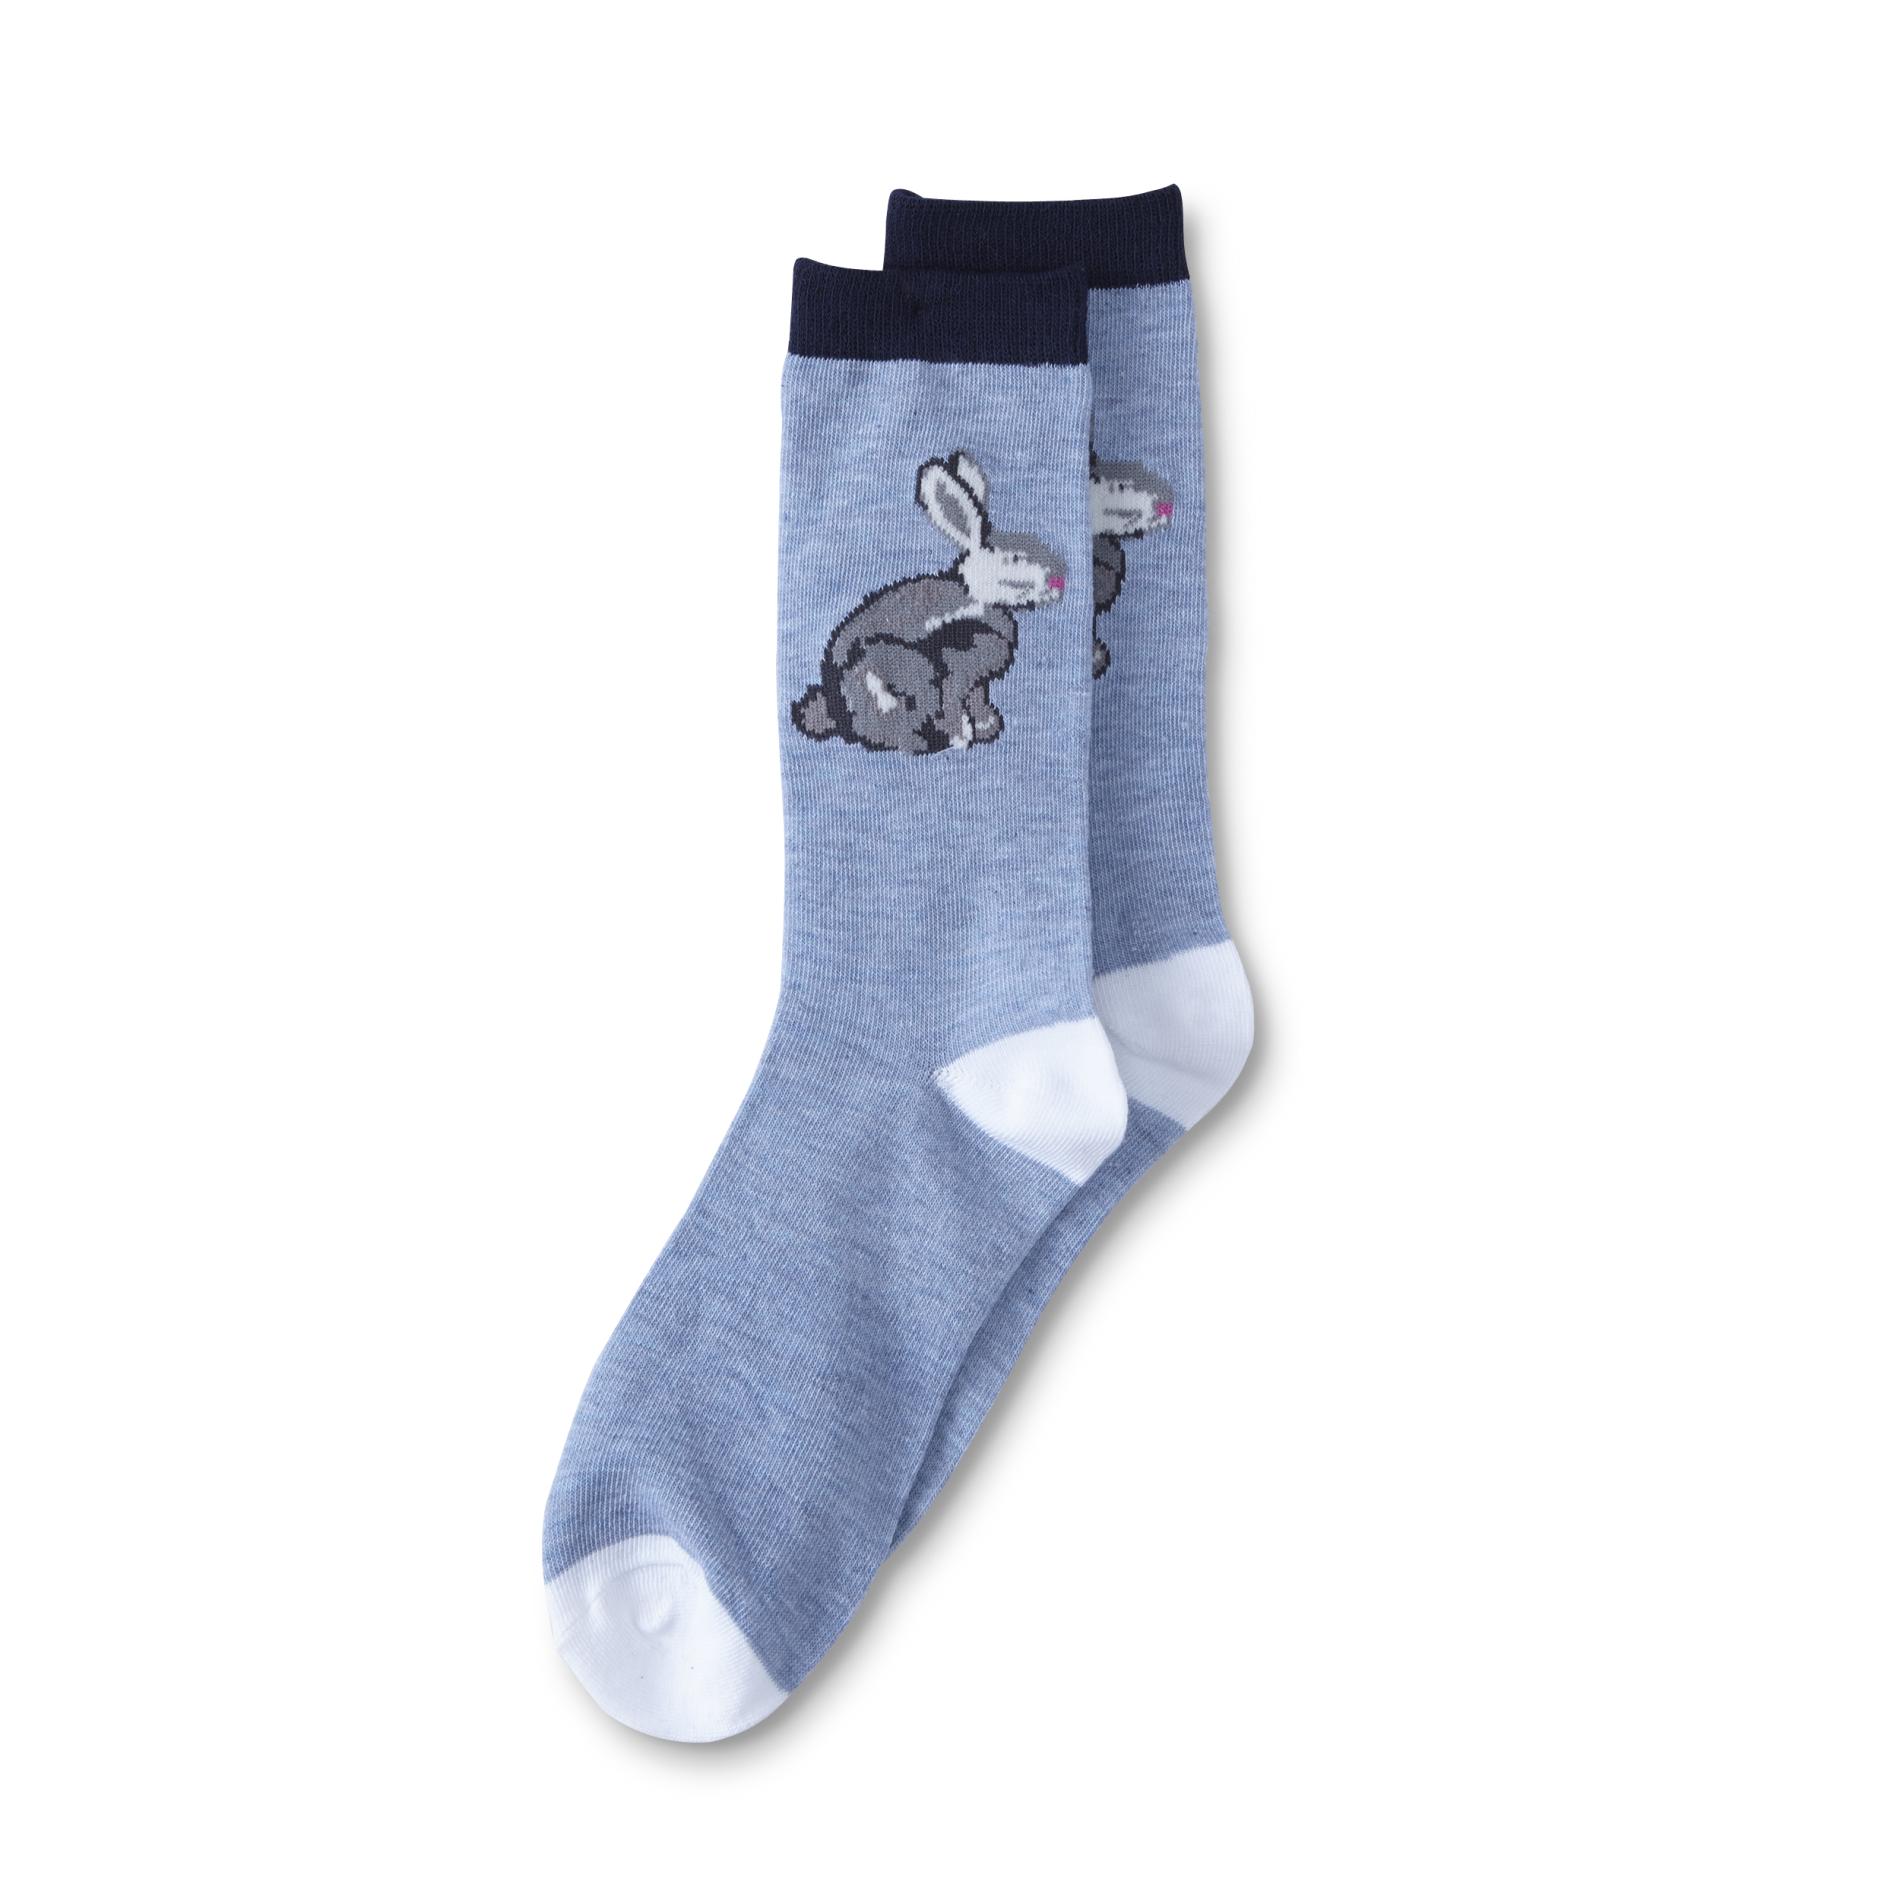 Joe Boxer Junior's Novelty Socks - Bunny